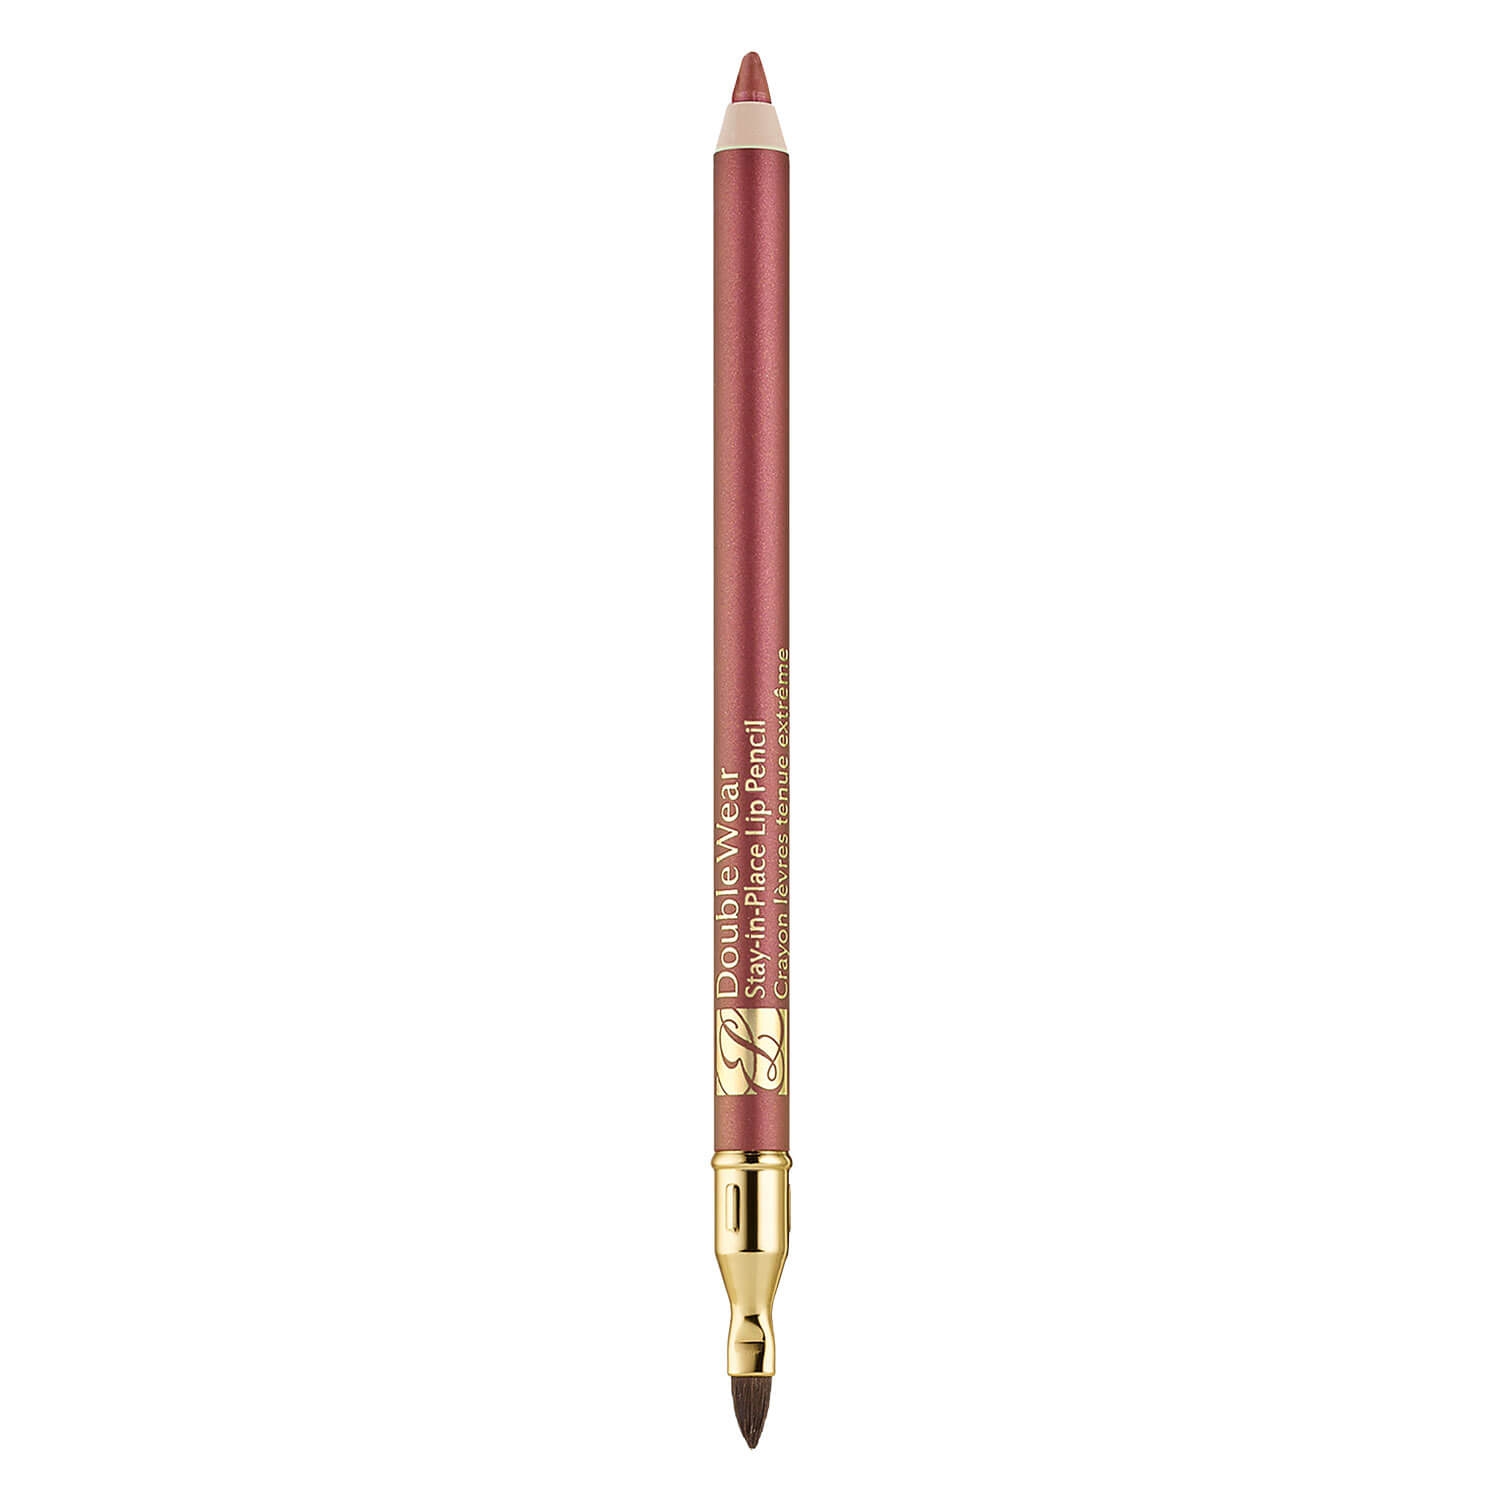 Produktbild von Double Wear - Stay-in-Place Lip Pencil Mocha